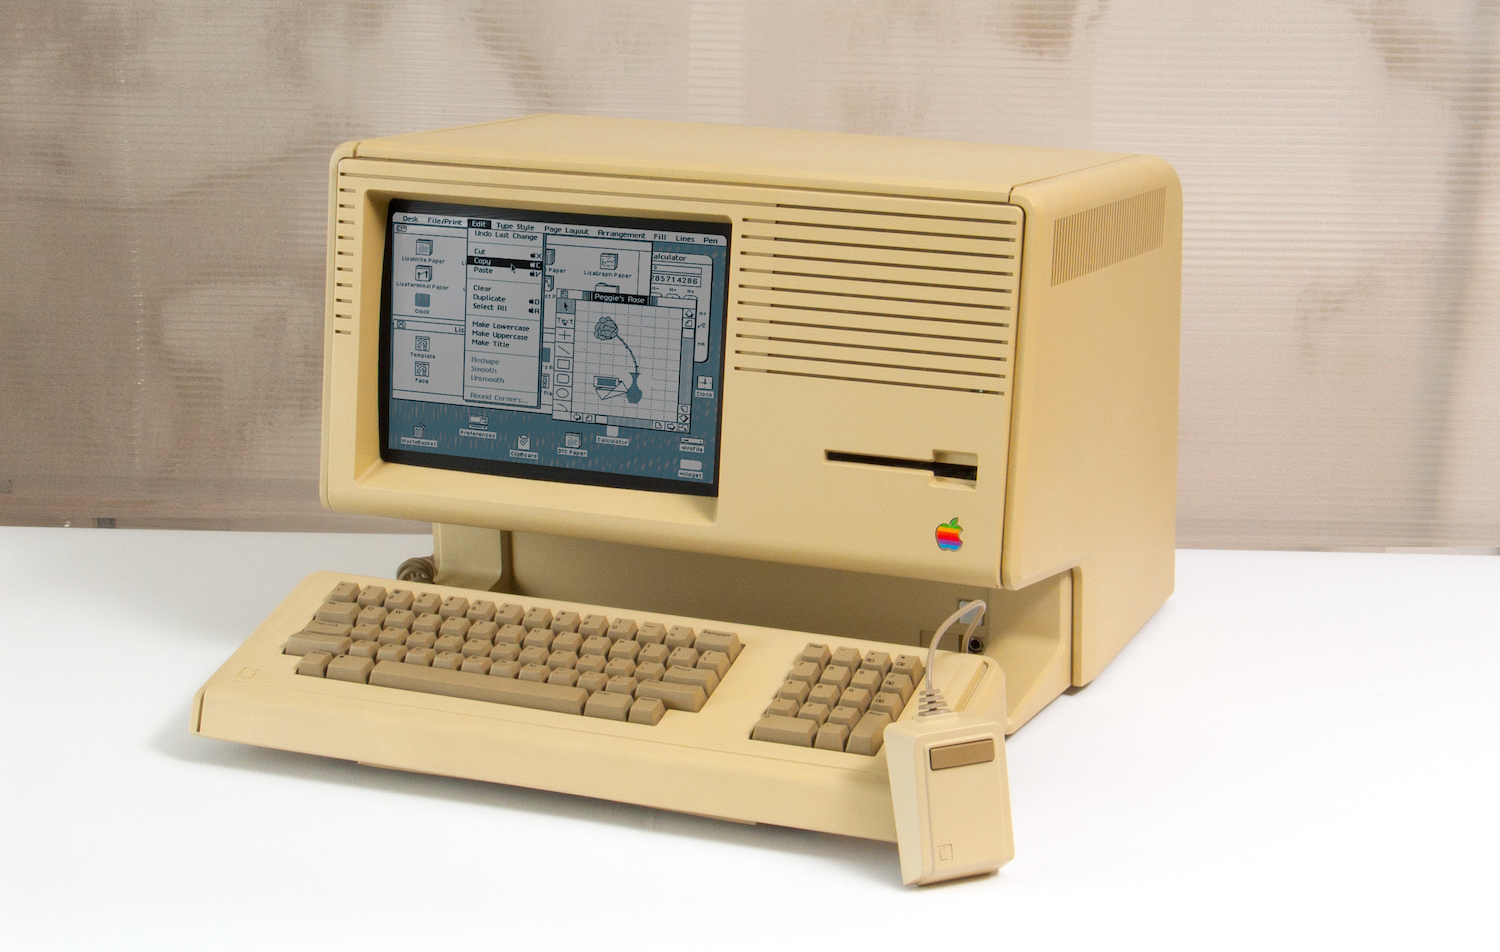   HyperCard   ,  